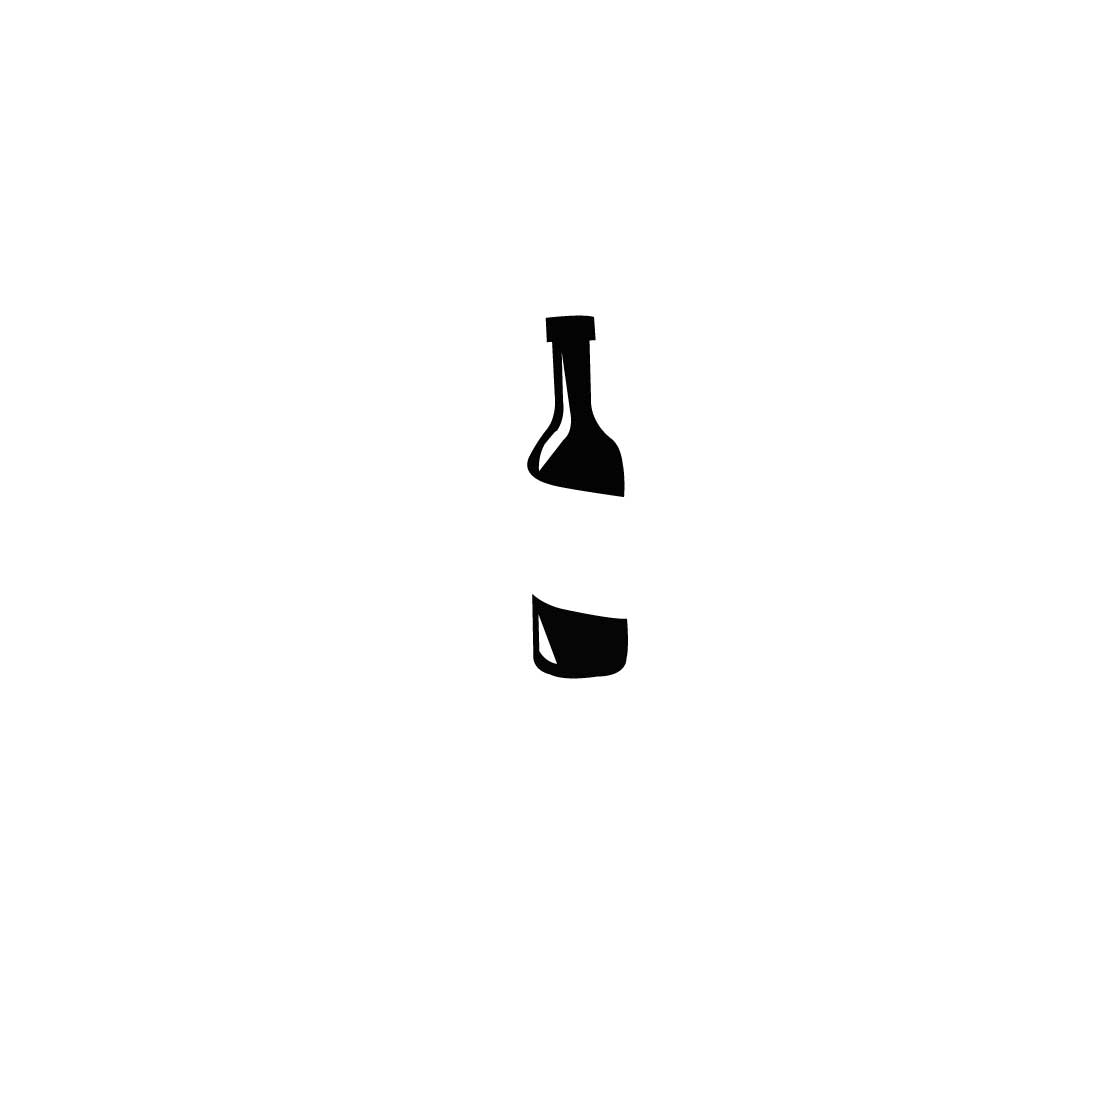 5 Bottle Icons Bundle, wine bottle icon.